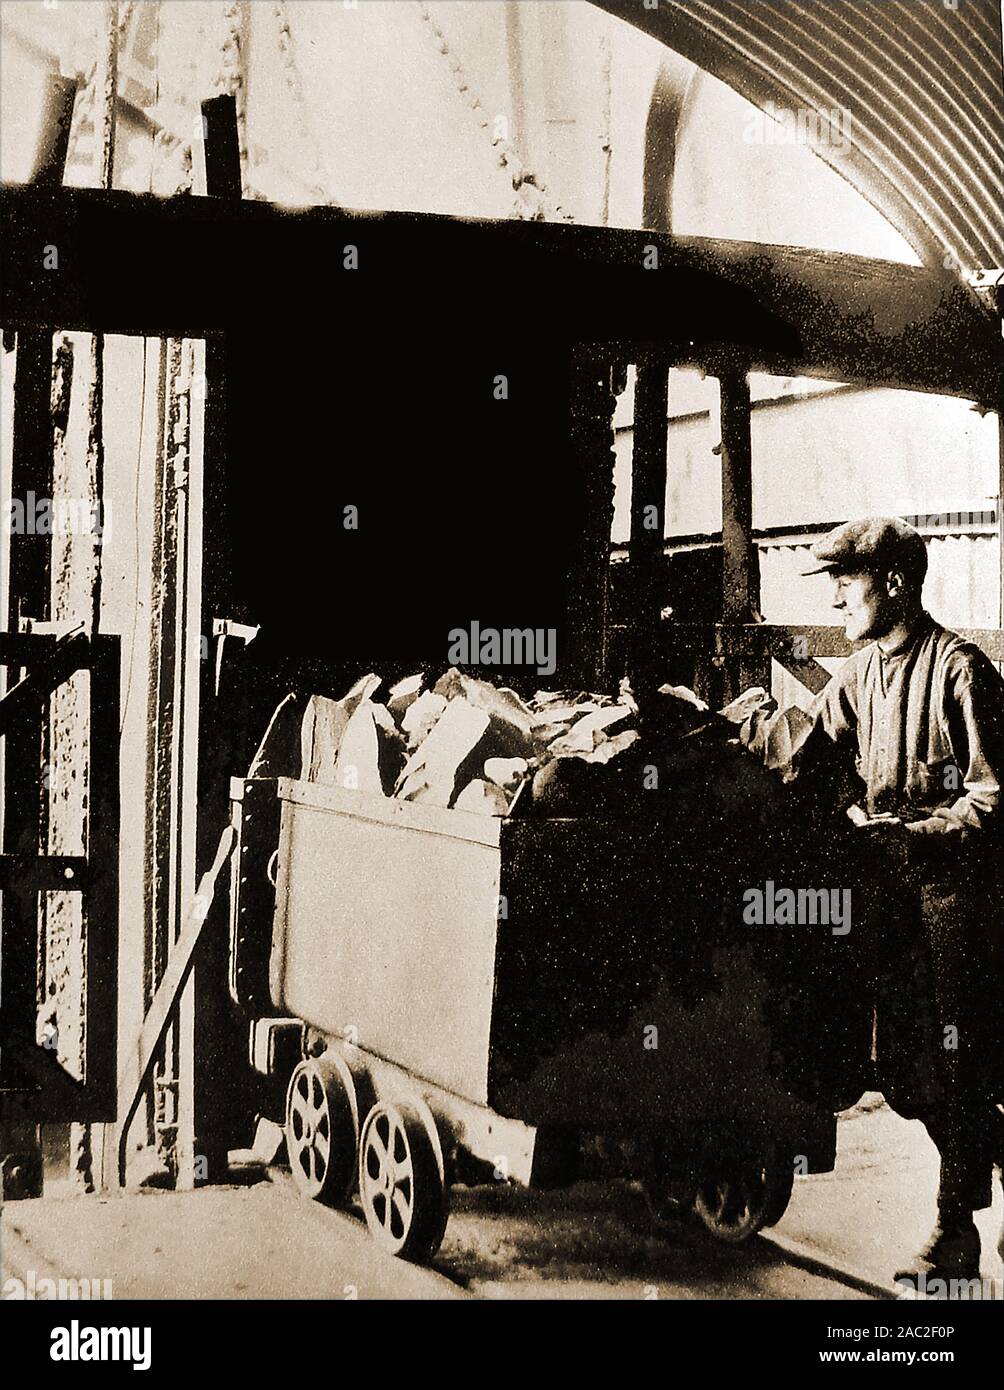 Une photographie montrant une baignoire de shale arrivant à la surface d'une mine de schiste dans l'ouest de Calder, l'Écosse. Burngrange Mine de schiste a été la propriété de la jeune lumière paraffine & Mineral Oil Co., Ltd.lorsque le 10 janvier 1947, la mine a connu sa pire catastrophe minière souterraine. Quinze mineurs ont péri lorsque le grisou a été déclenché par une lampe à acétylène Banque D'Images